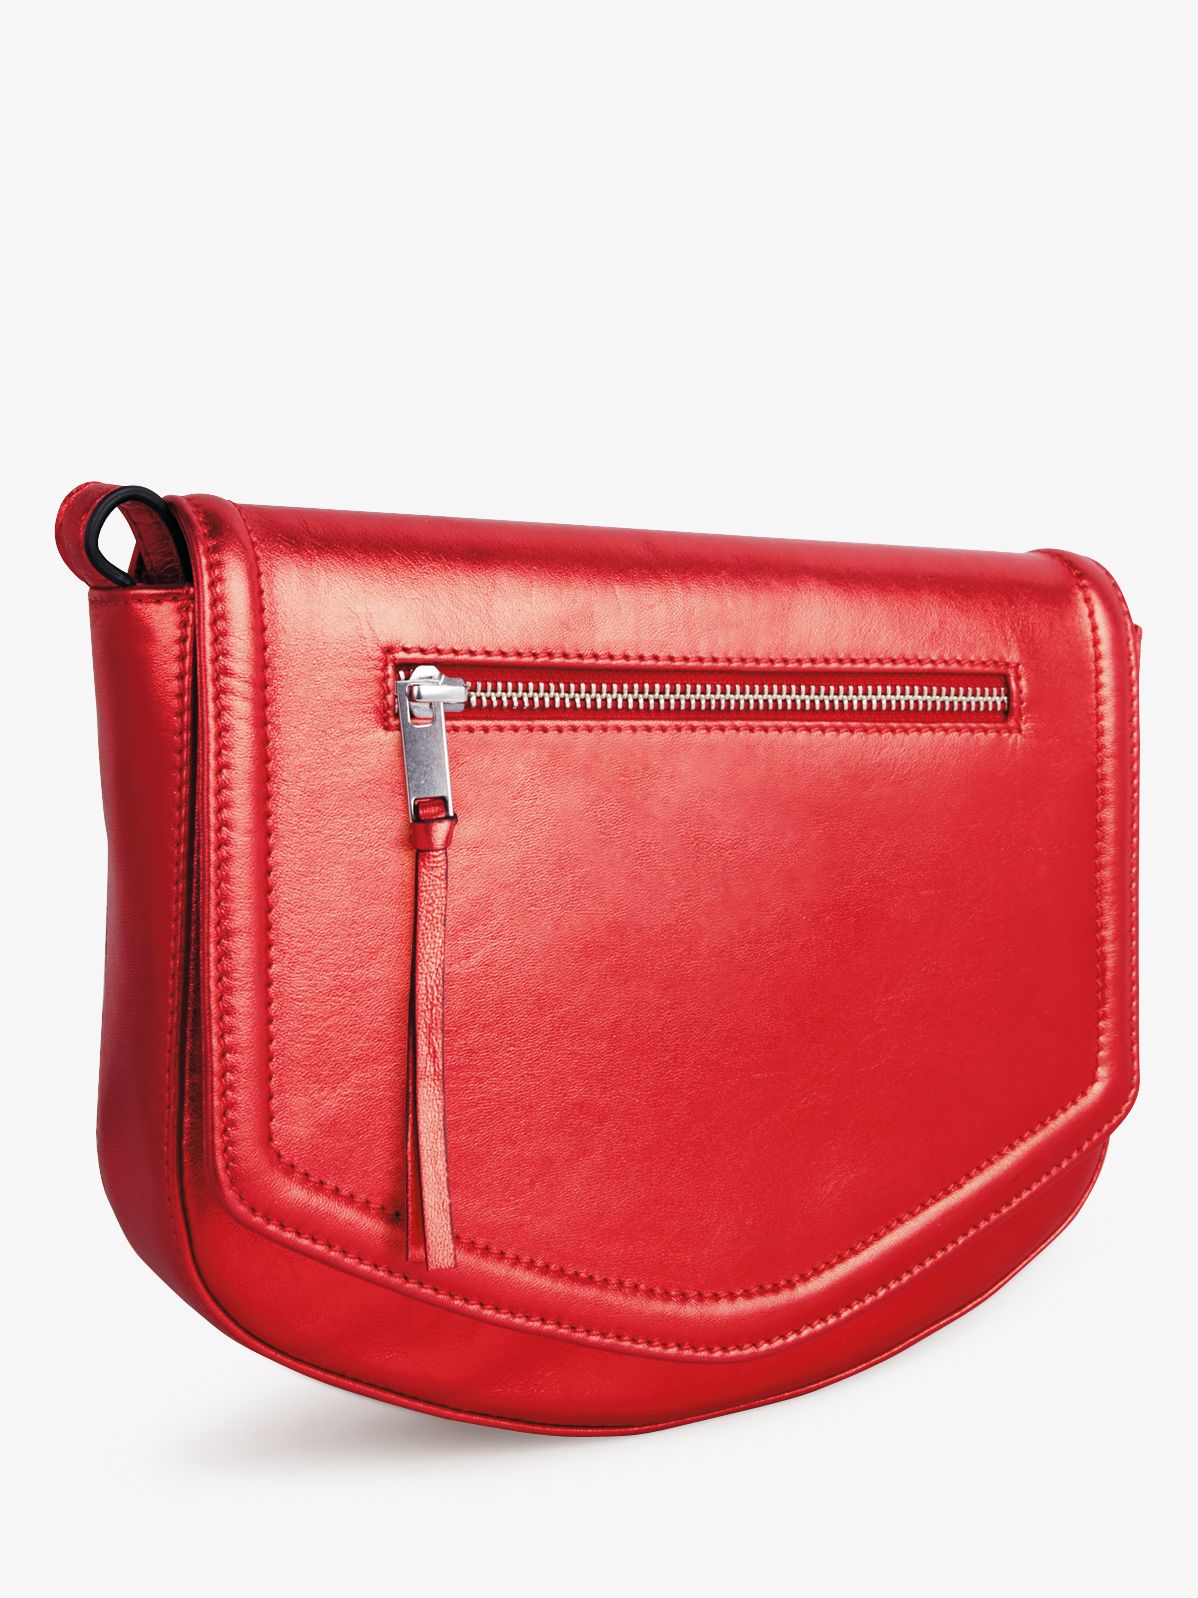 Offer: hush Aurelie Bag, Red at John Lewis & Partners